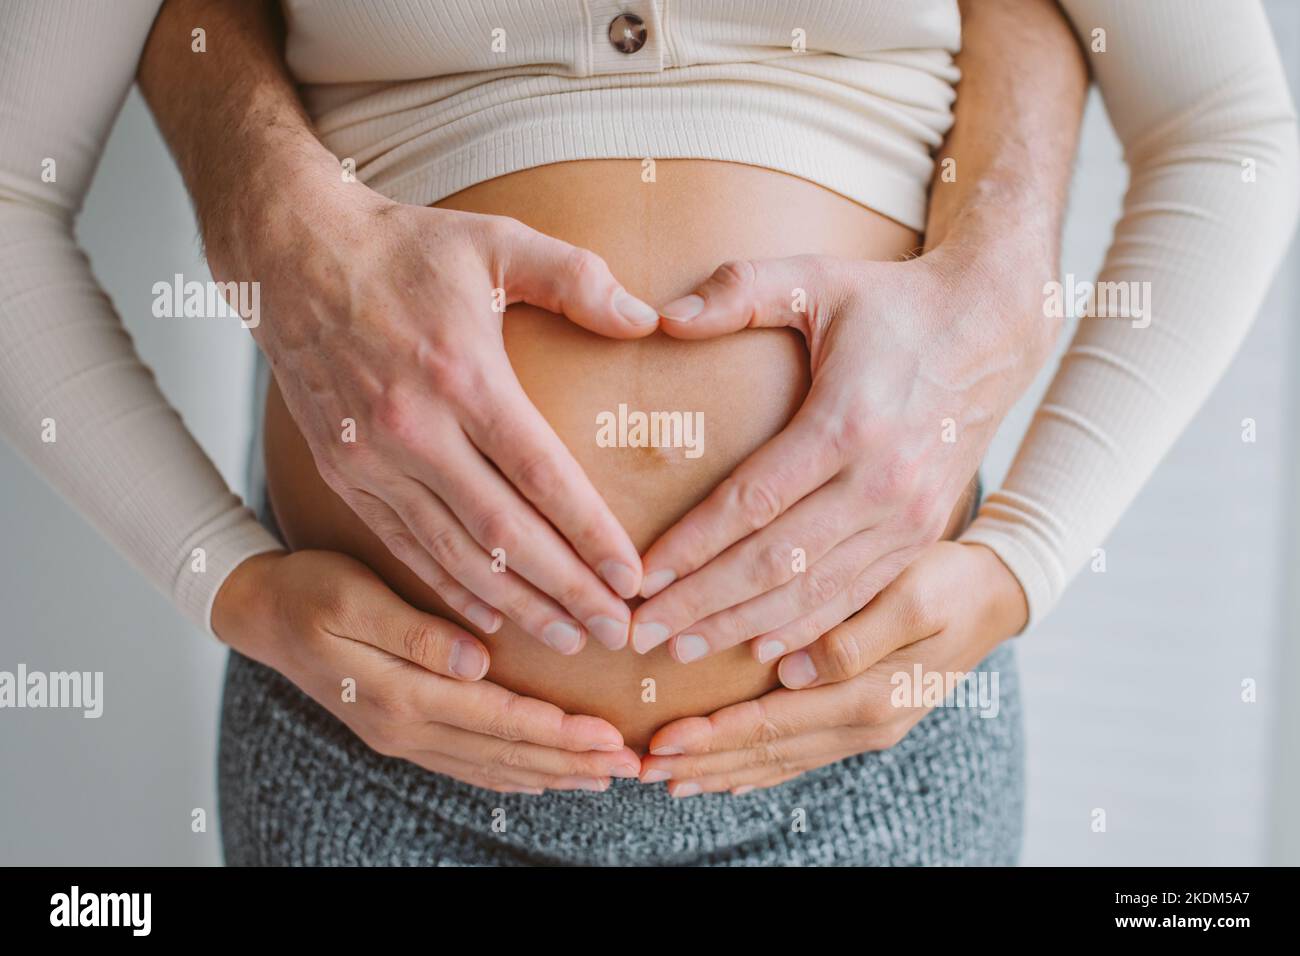 Liebevolle Eltern Herz Form Hände auf schwanger Frau Bauch. Erwartet Paar in der Liebe Schwangerschaft Nahaufnahme Foto des Bauches. Stockfoto